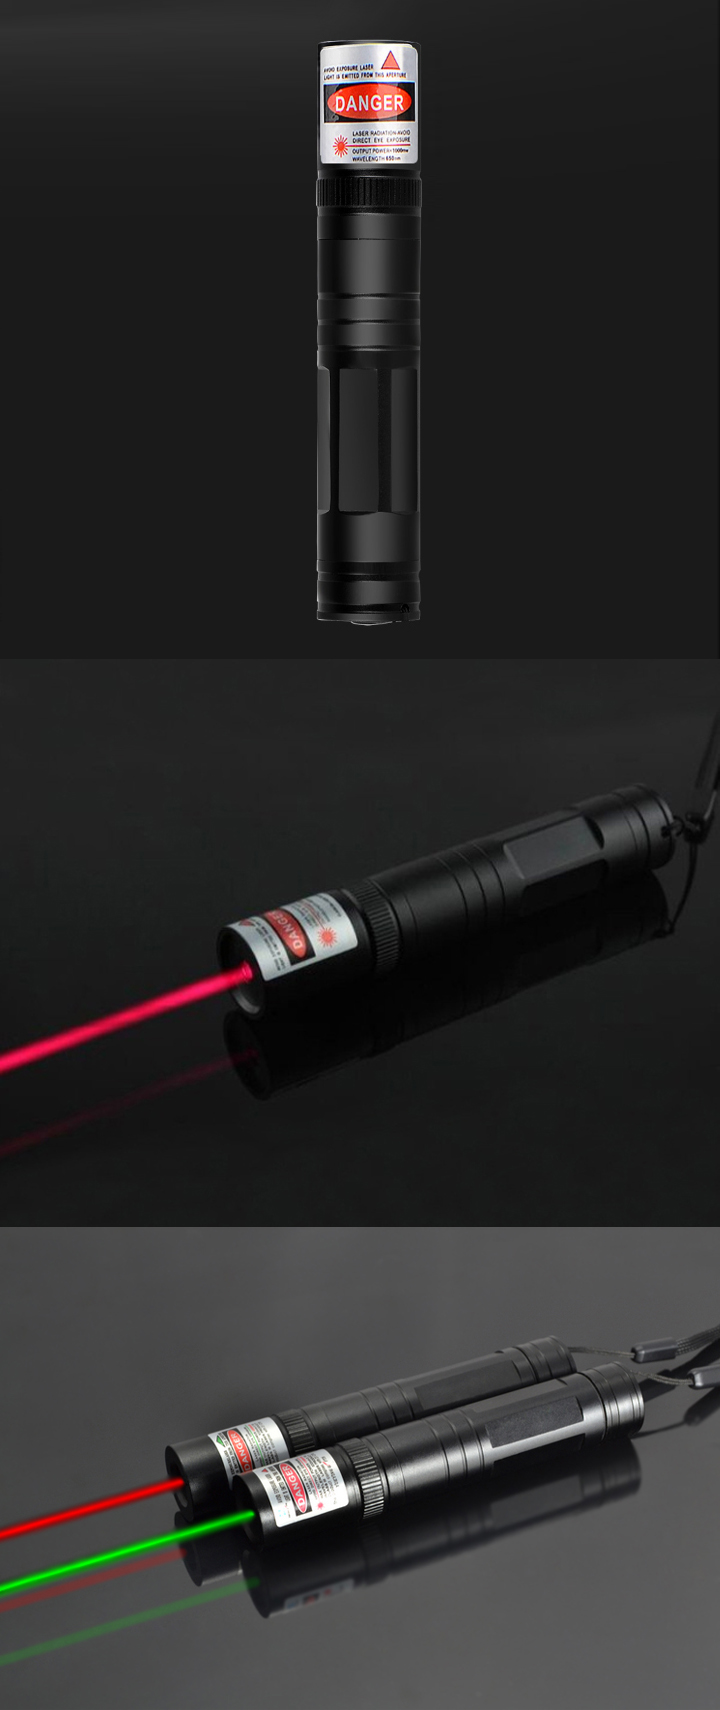 Pointeur laser rouge 100mW / 200mW pas cher avec batterie rechargeable